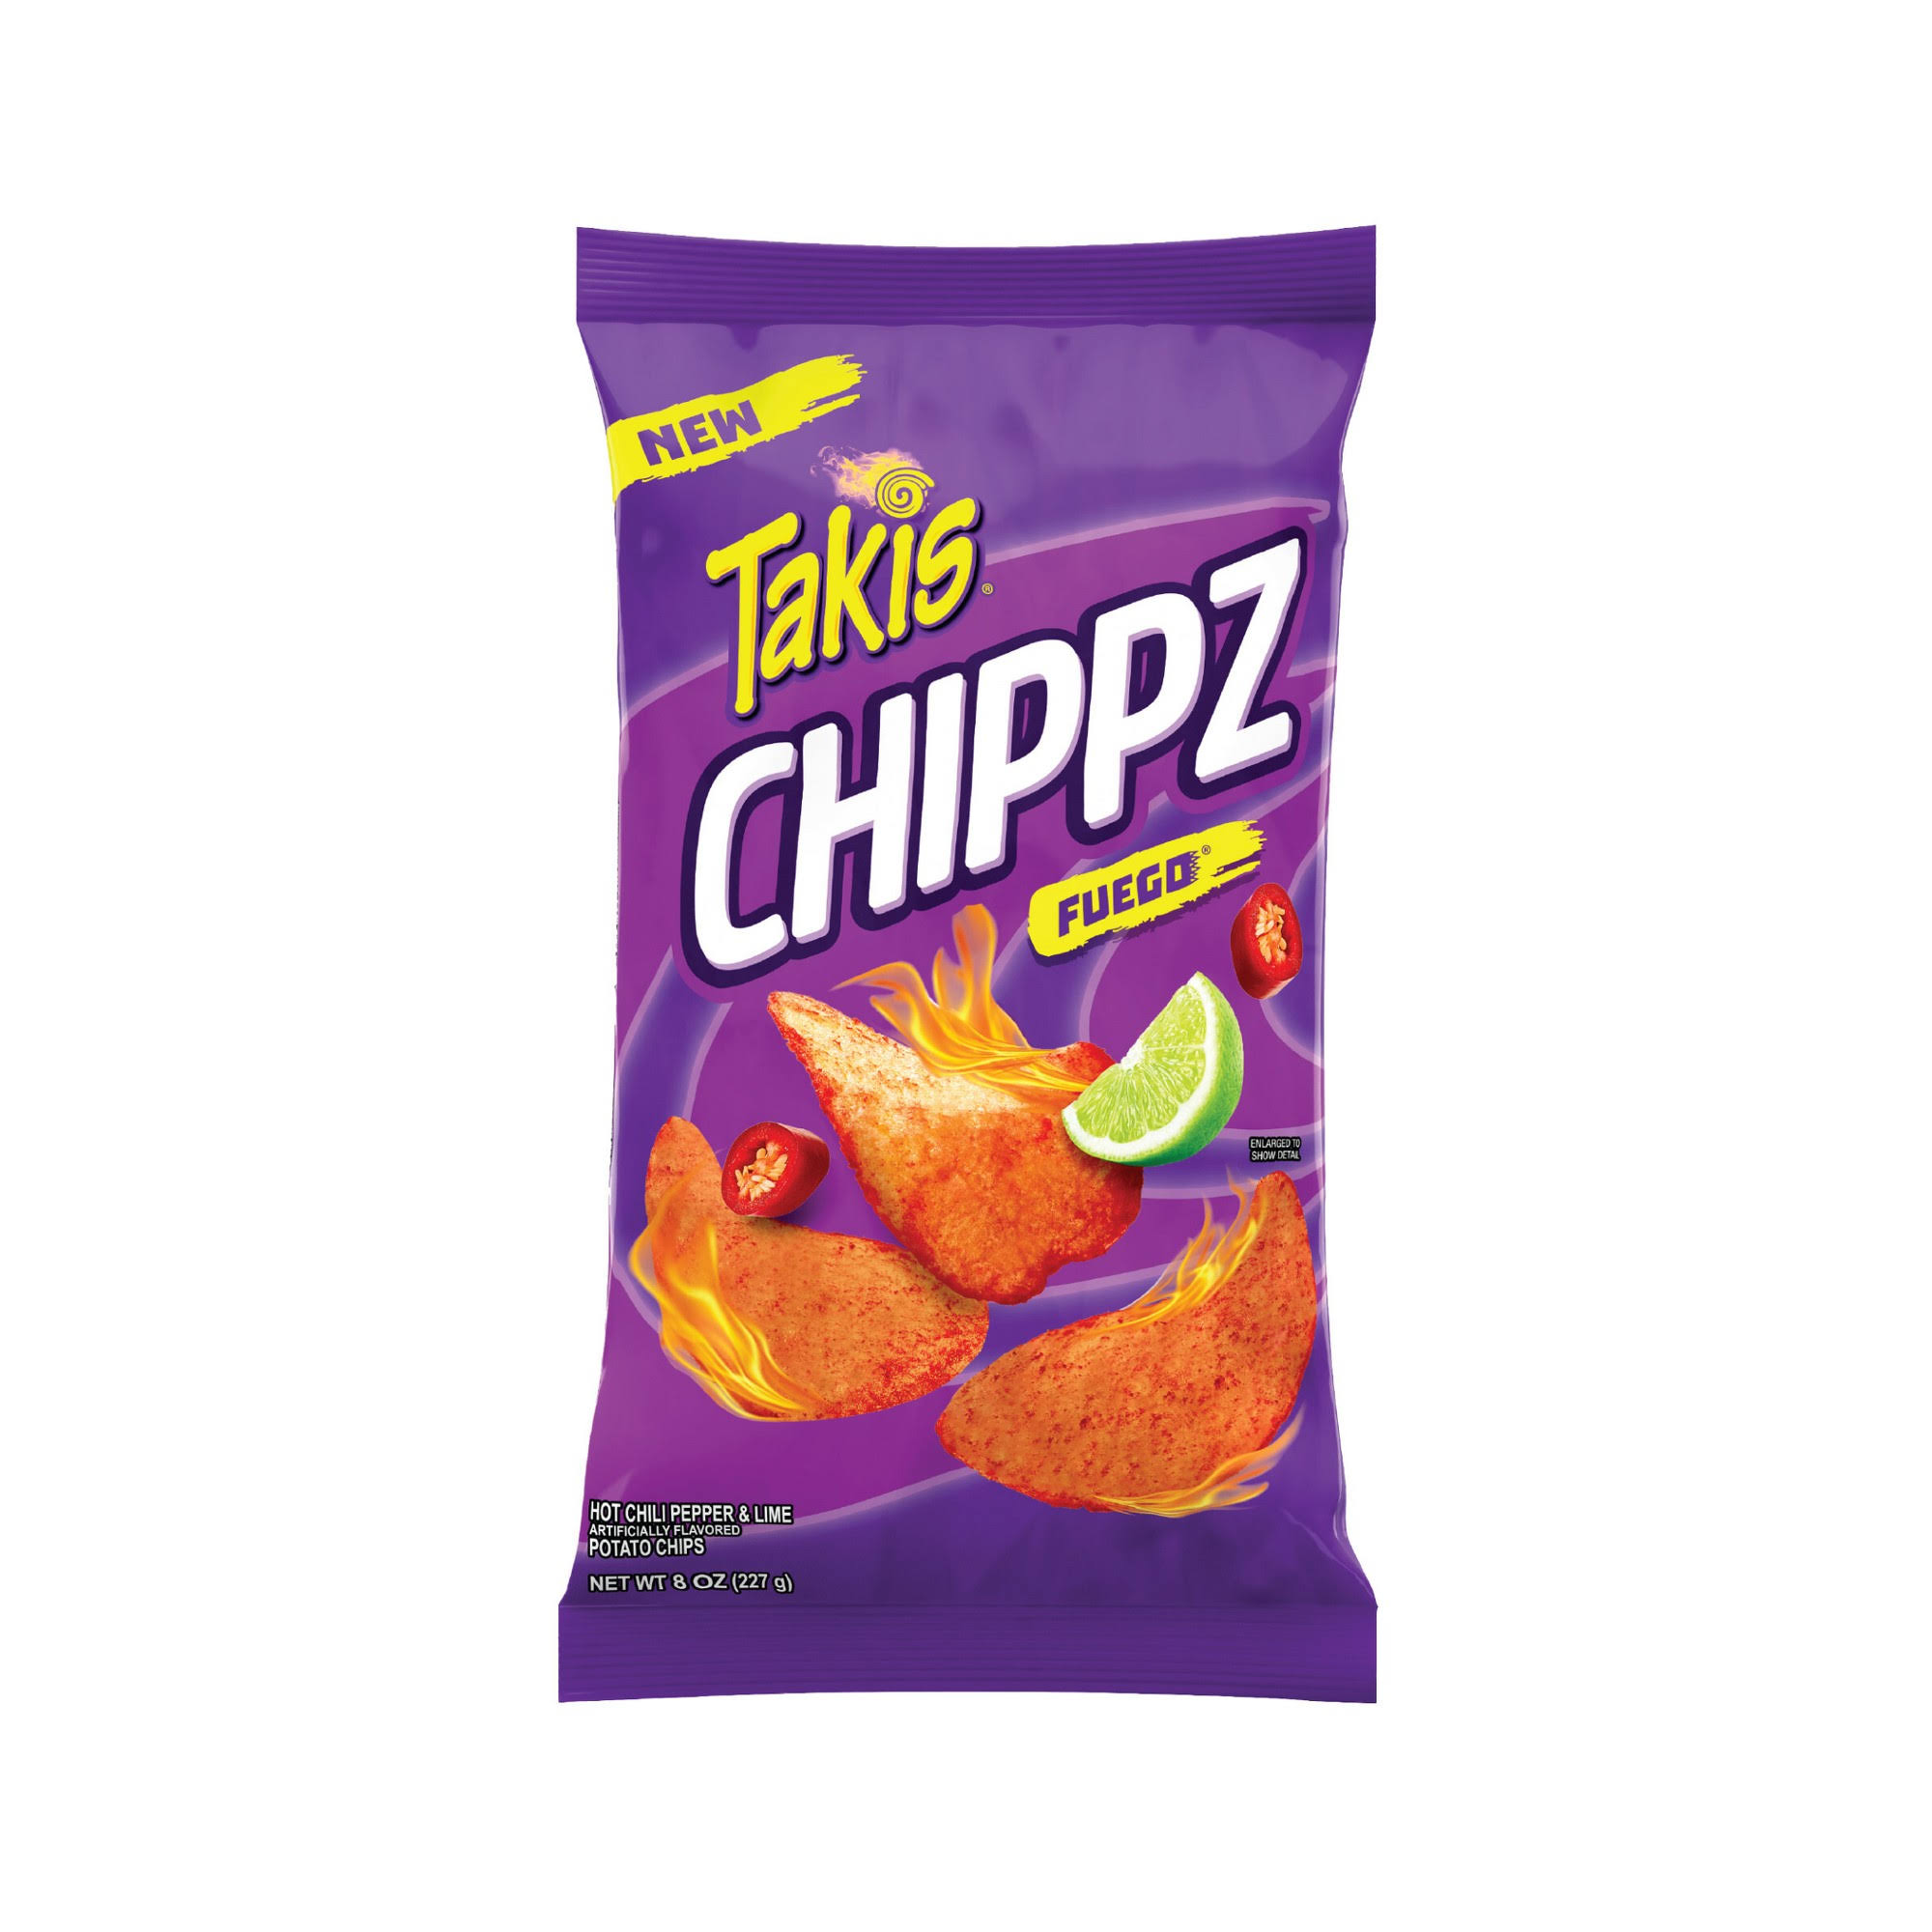 Takis Chippz Fuego Potato Chips 8 oz